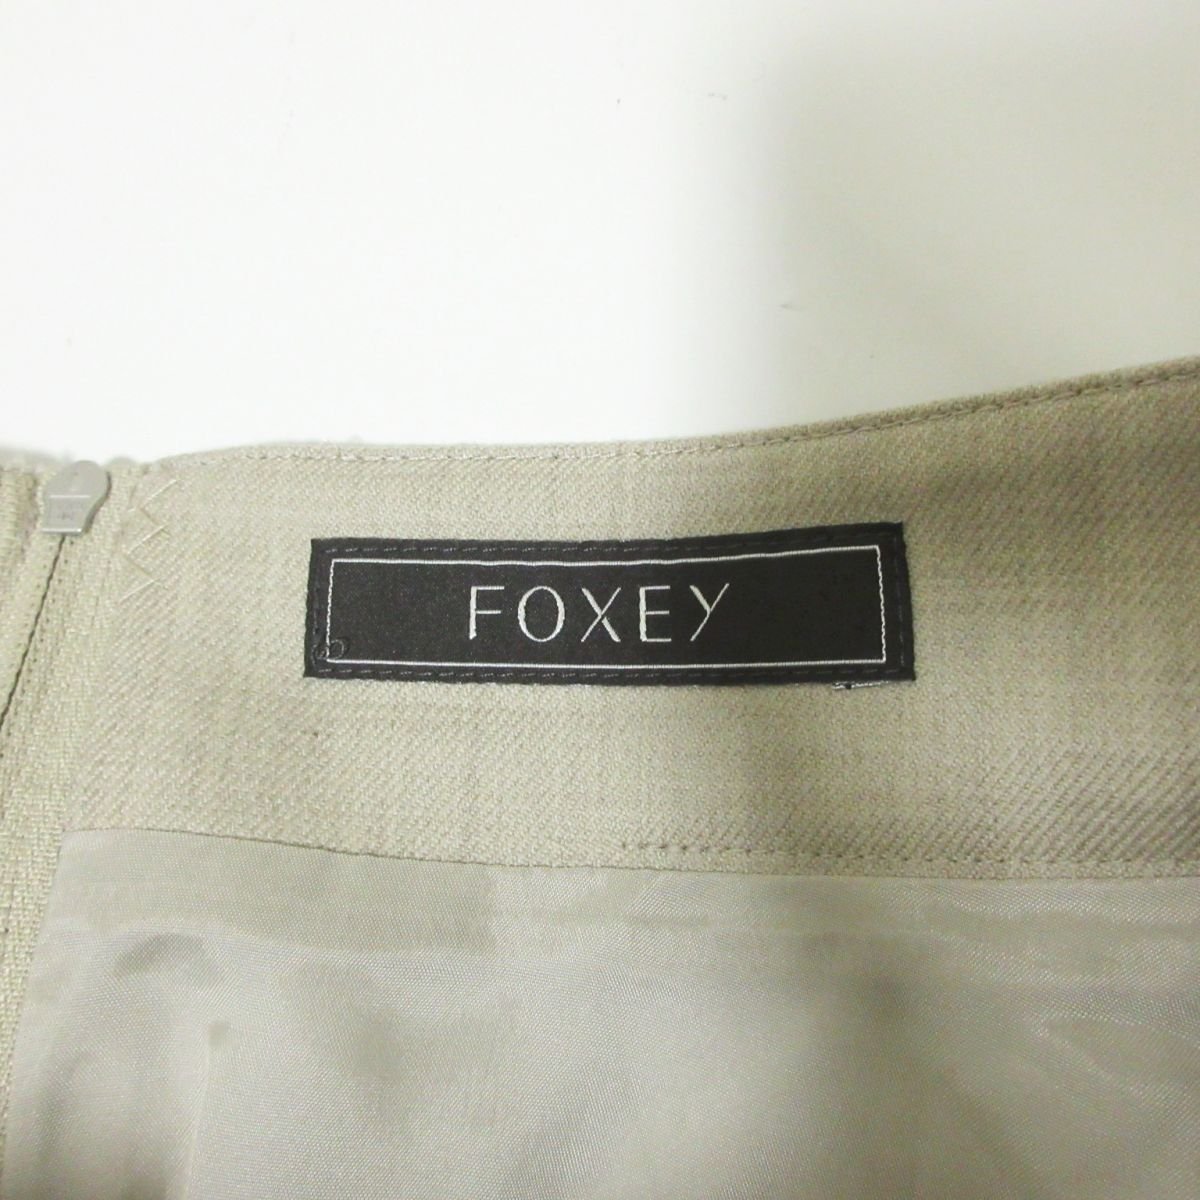  прекрасный товар 2021 год модели FOXEY Foxey Cross стеганое полотно flair колени длина юбка Logo plate 42620 размер 38 бежевый 024